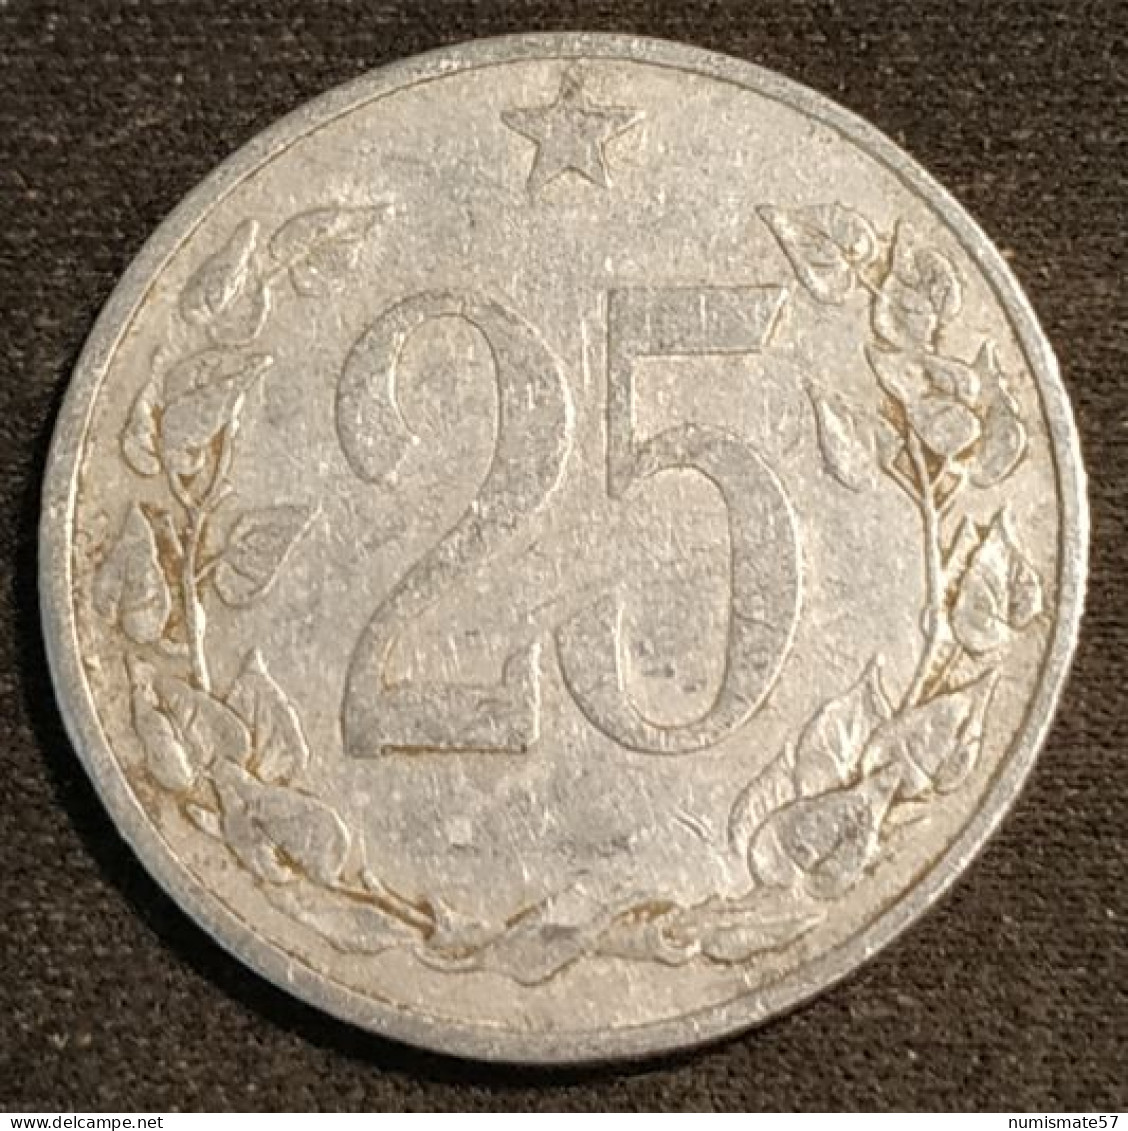 TCHECOSLOVAQUIE - Czechoslovakia - 25 HALERU 1953 - KM 39 - Tchécoslovaquie